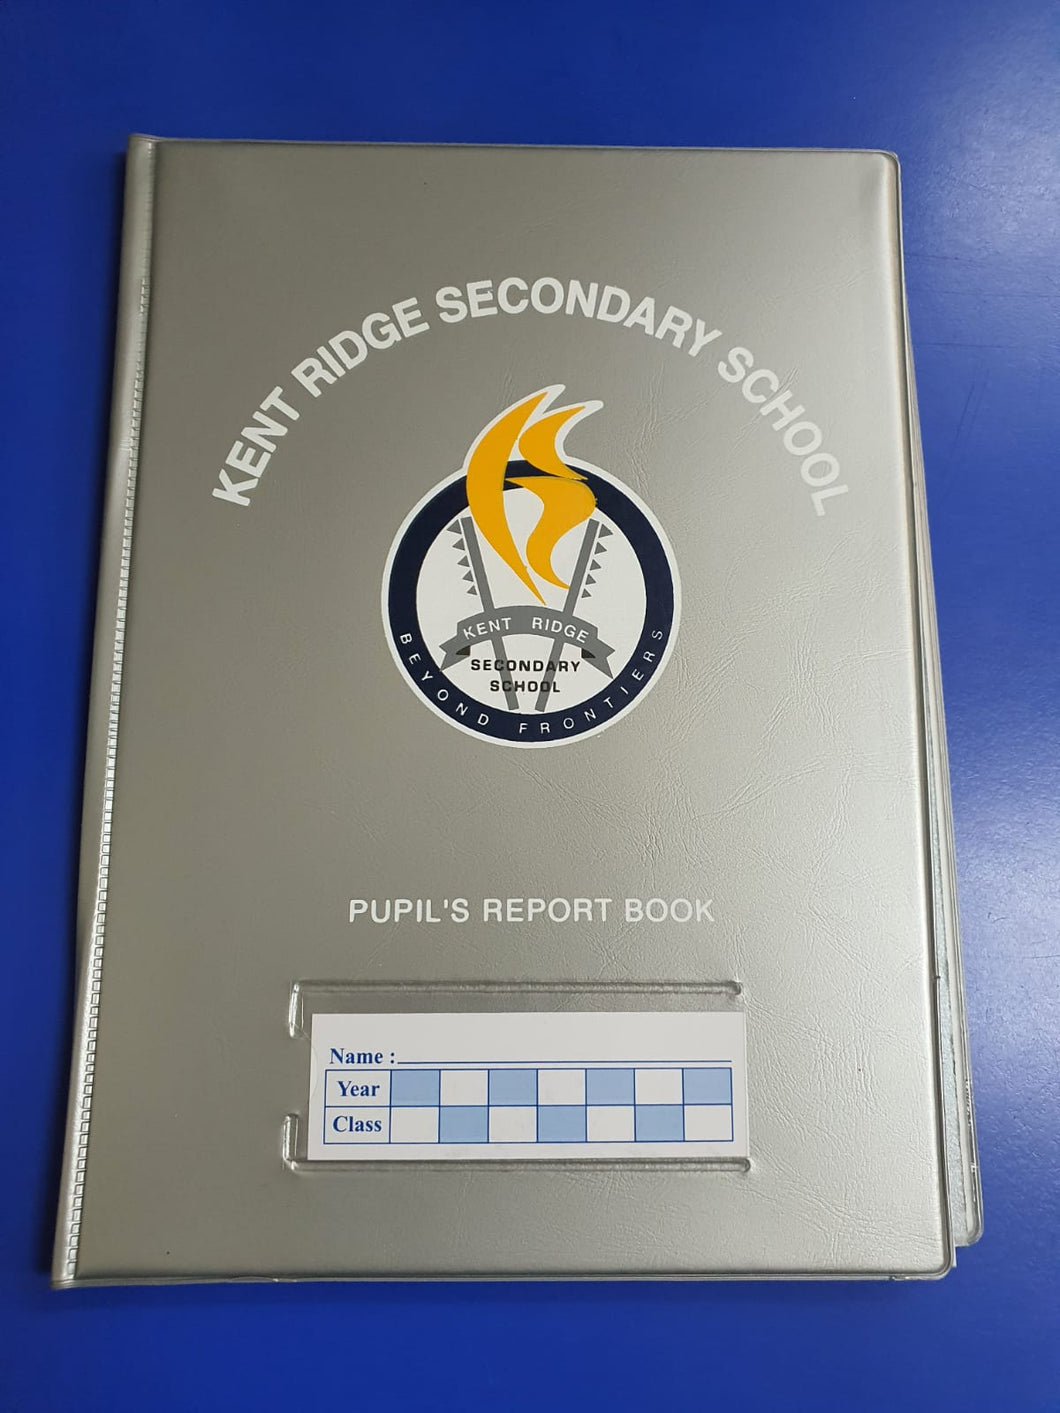 School Report Book